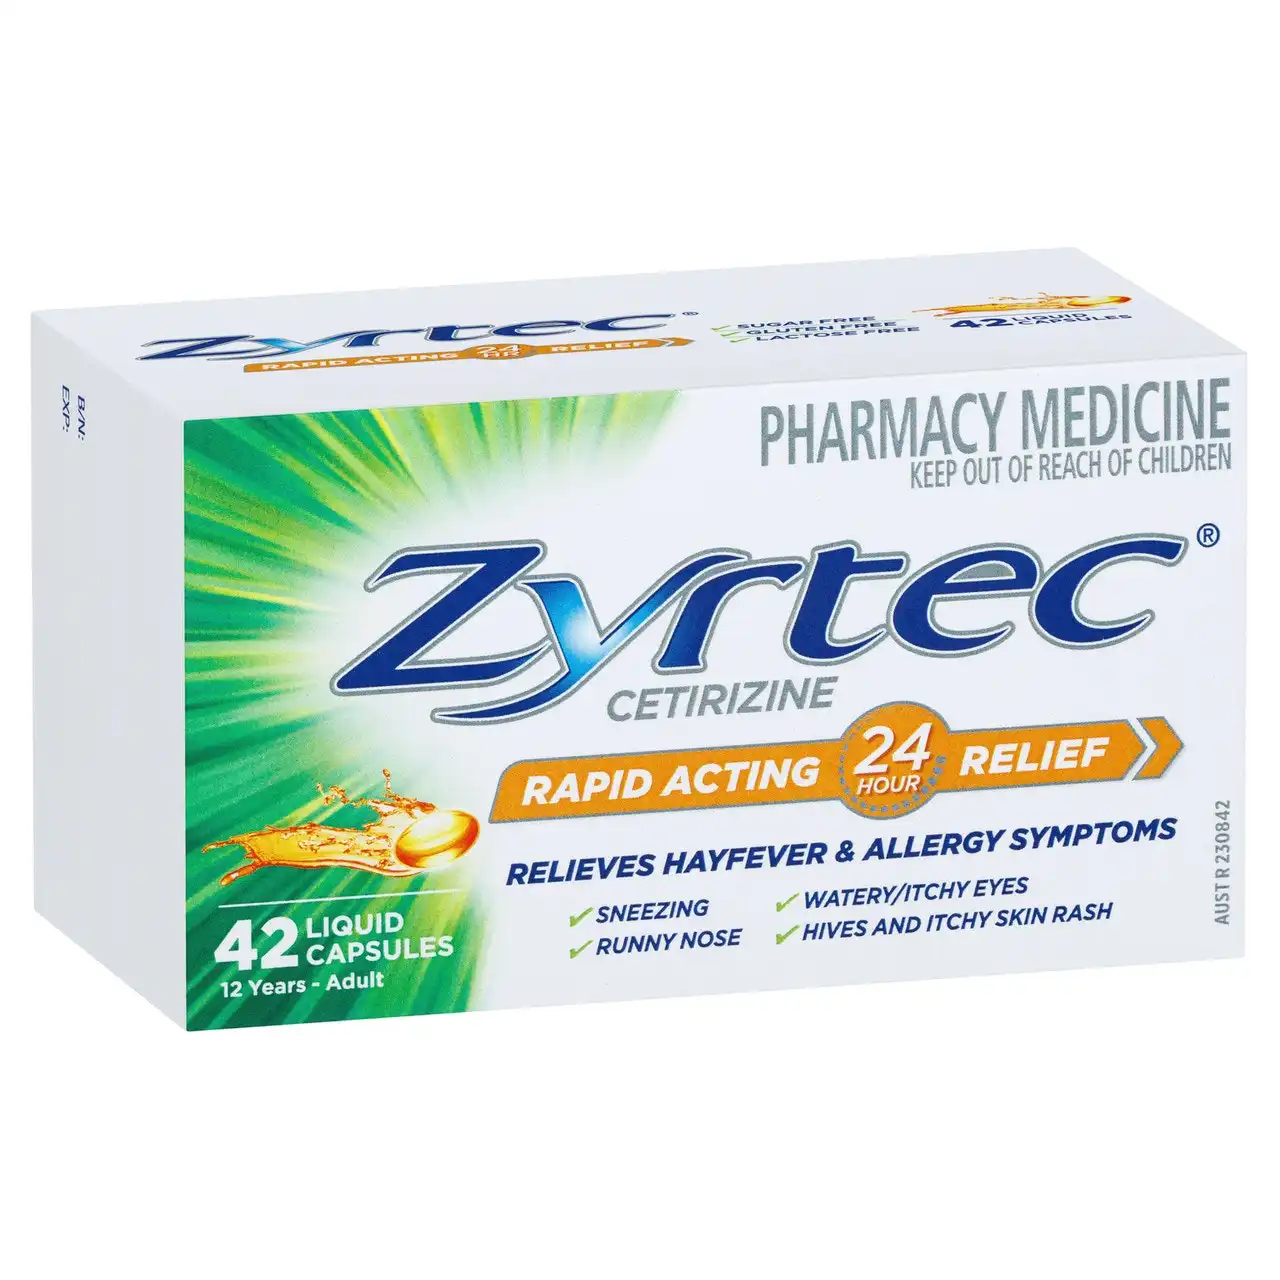 Zyrtec Rapid Acting Hayfever & Allergy Relief Antihistamine Liquid Capsules 42 Pack